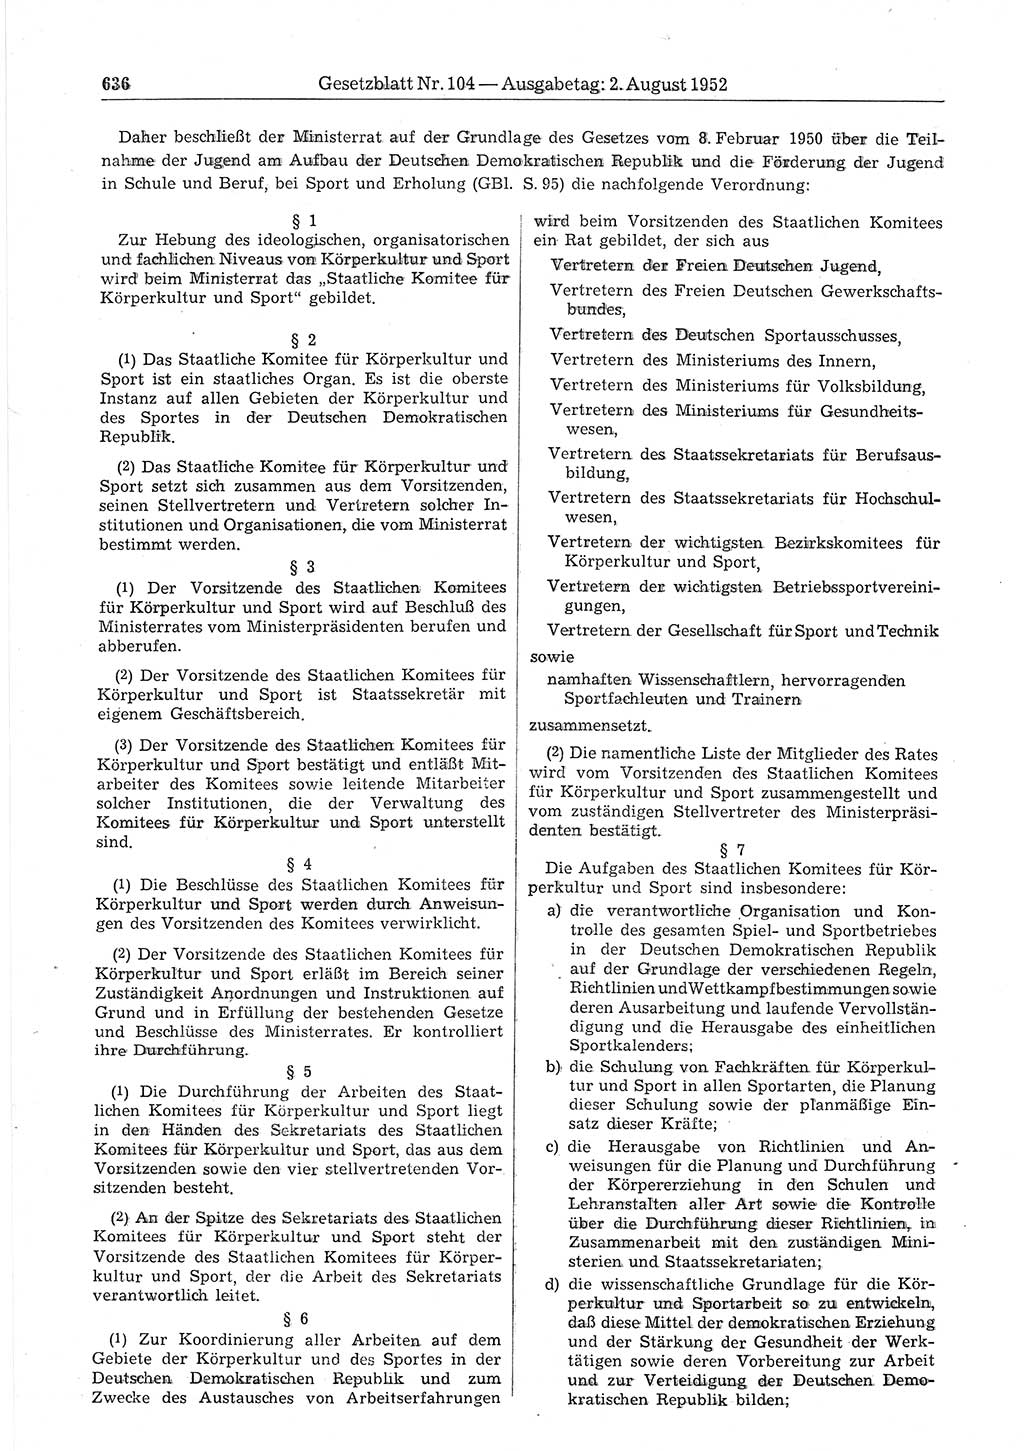 Gesetzblatt (GBl.) der Deutschen Demokratischen Republik (DDR) 1952, Seite 636 (GBl. DDR 1952, S. 636)